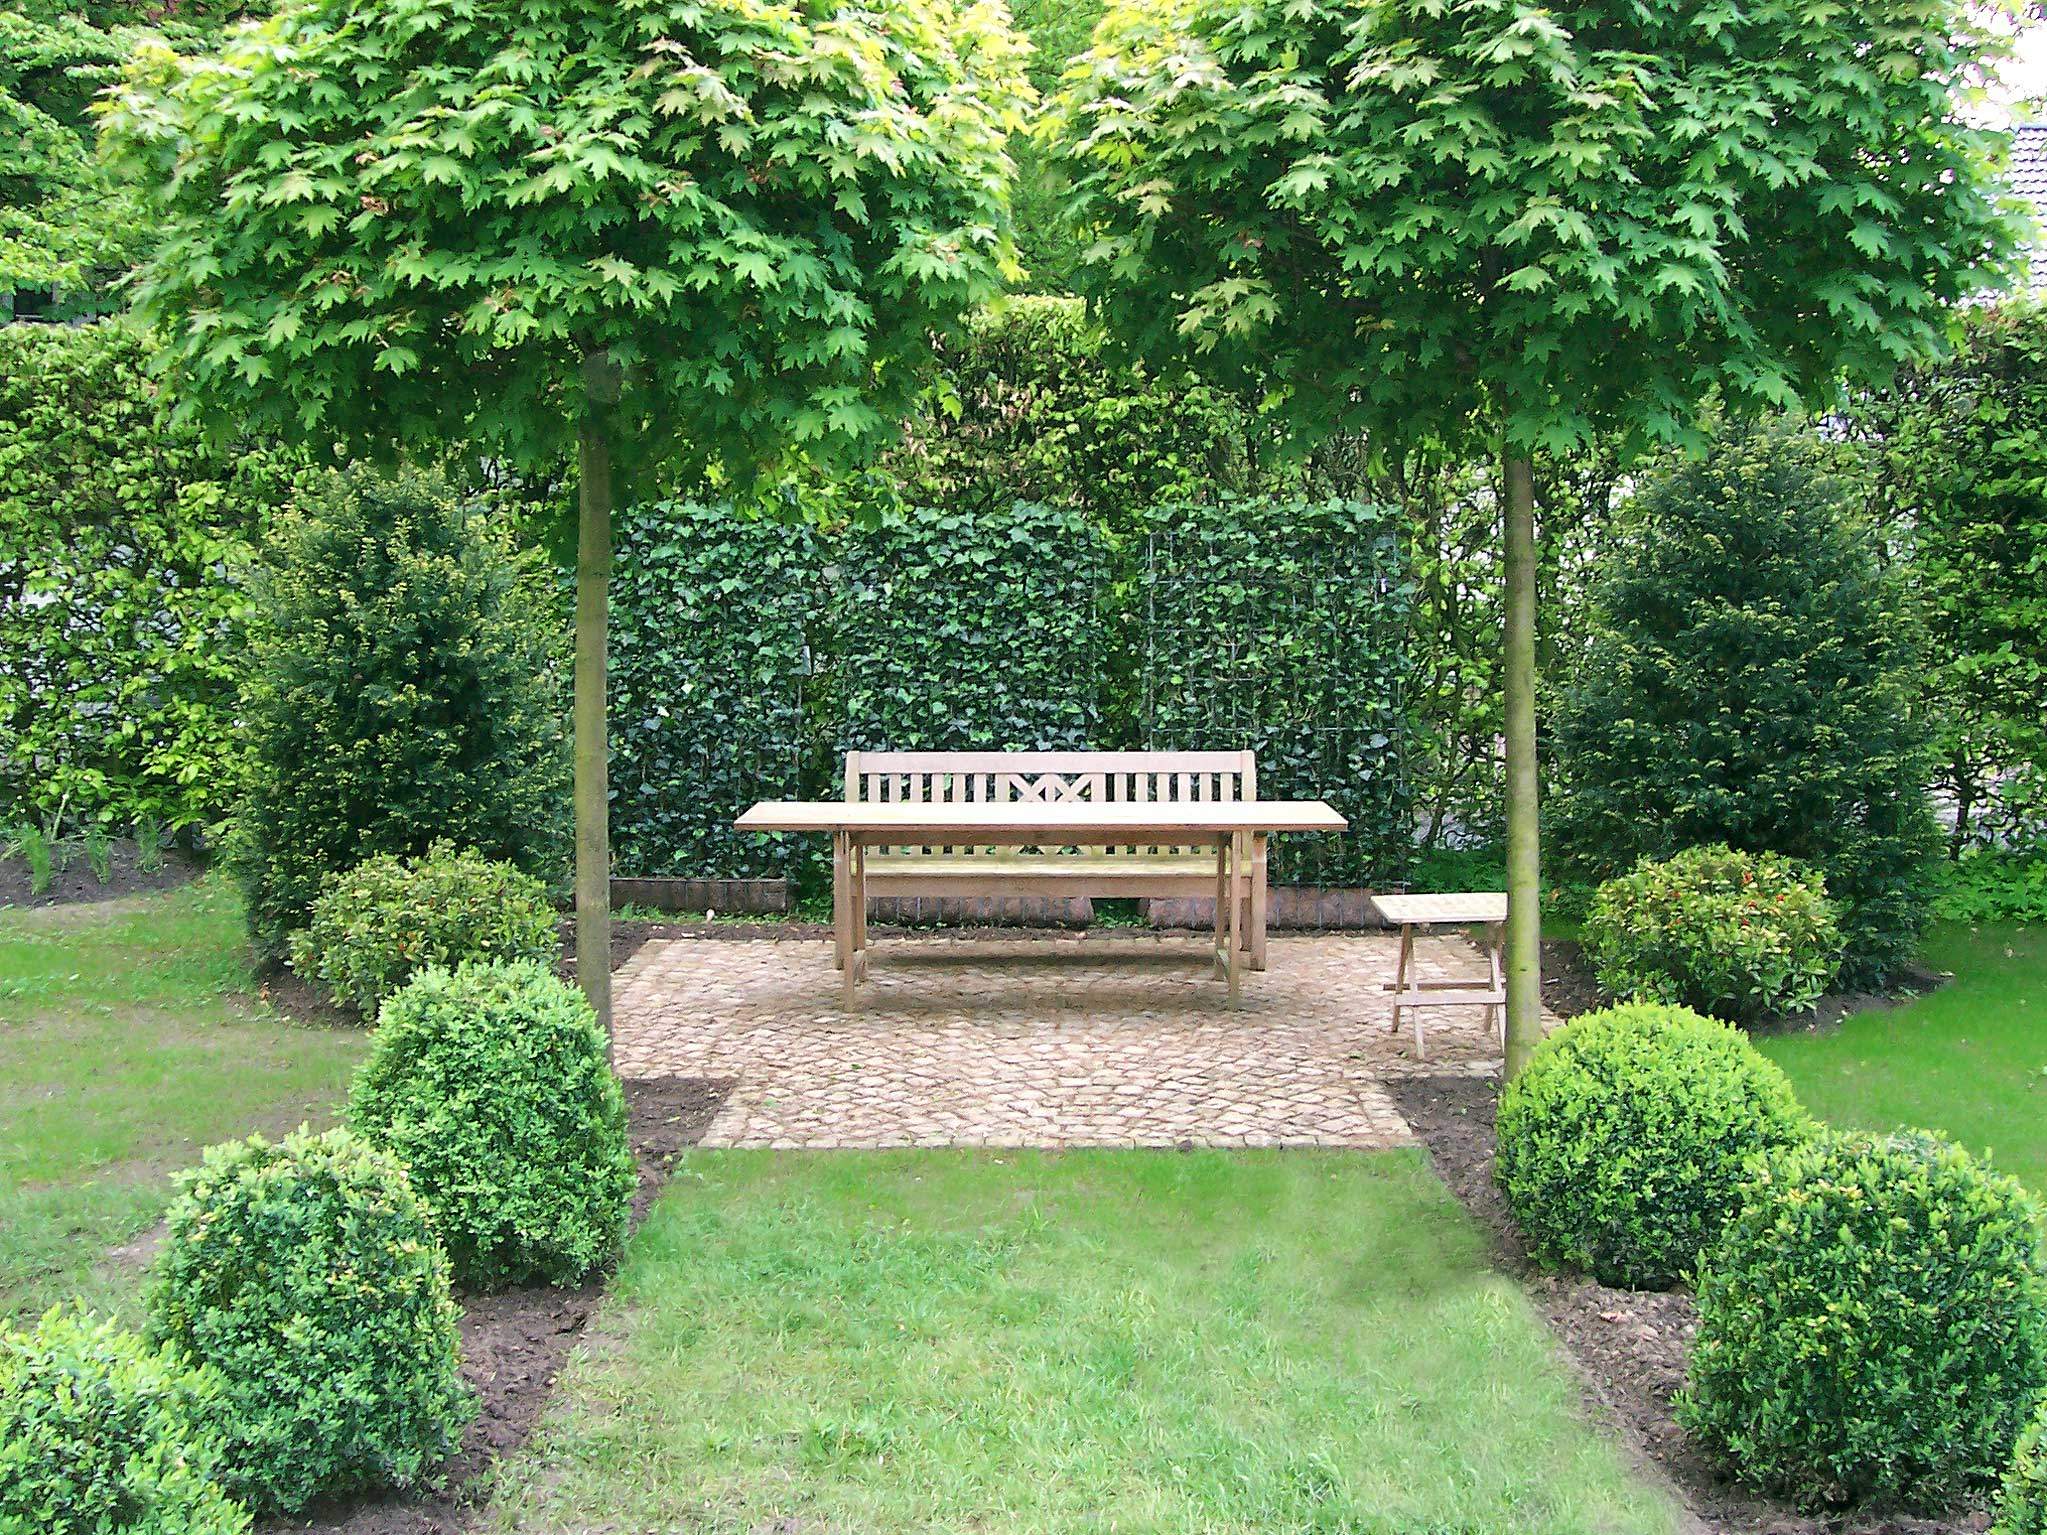 Garten Gestalten Frisch Schöne Sitzplätze Im Garten Planungswelten